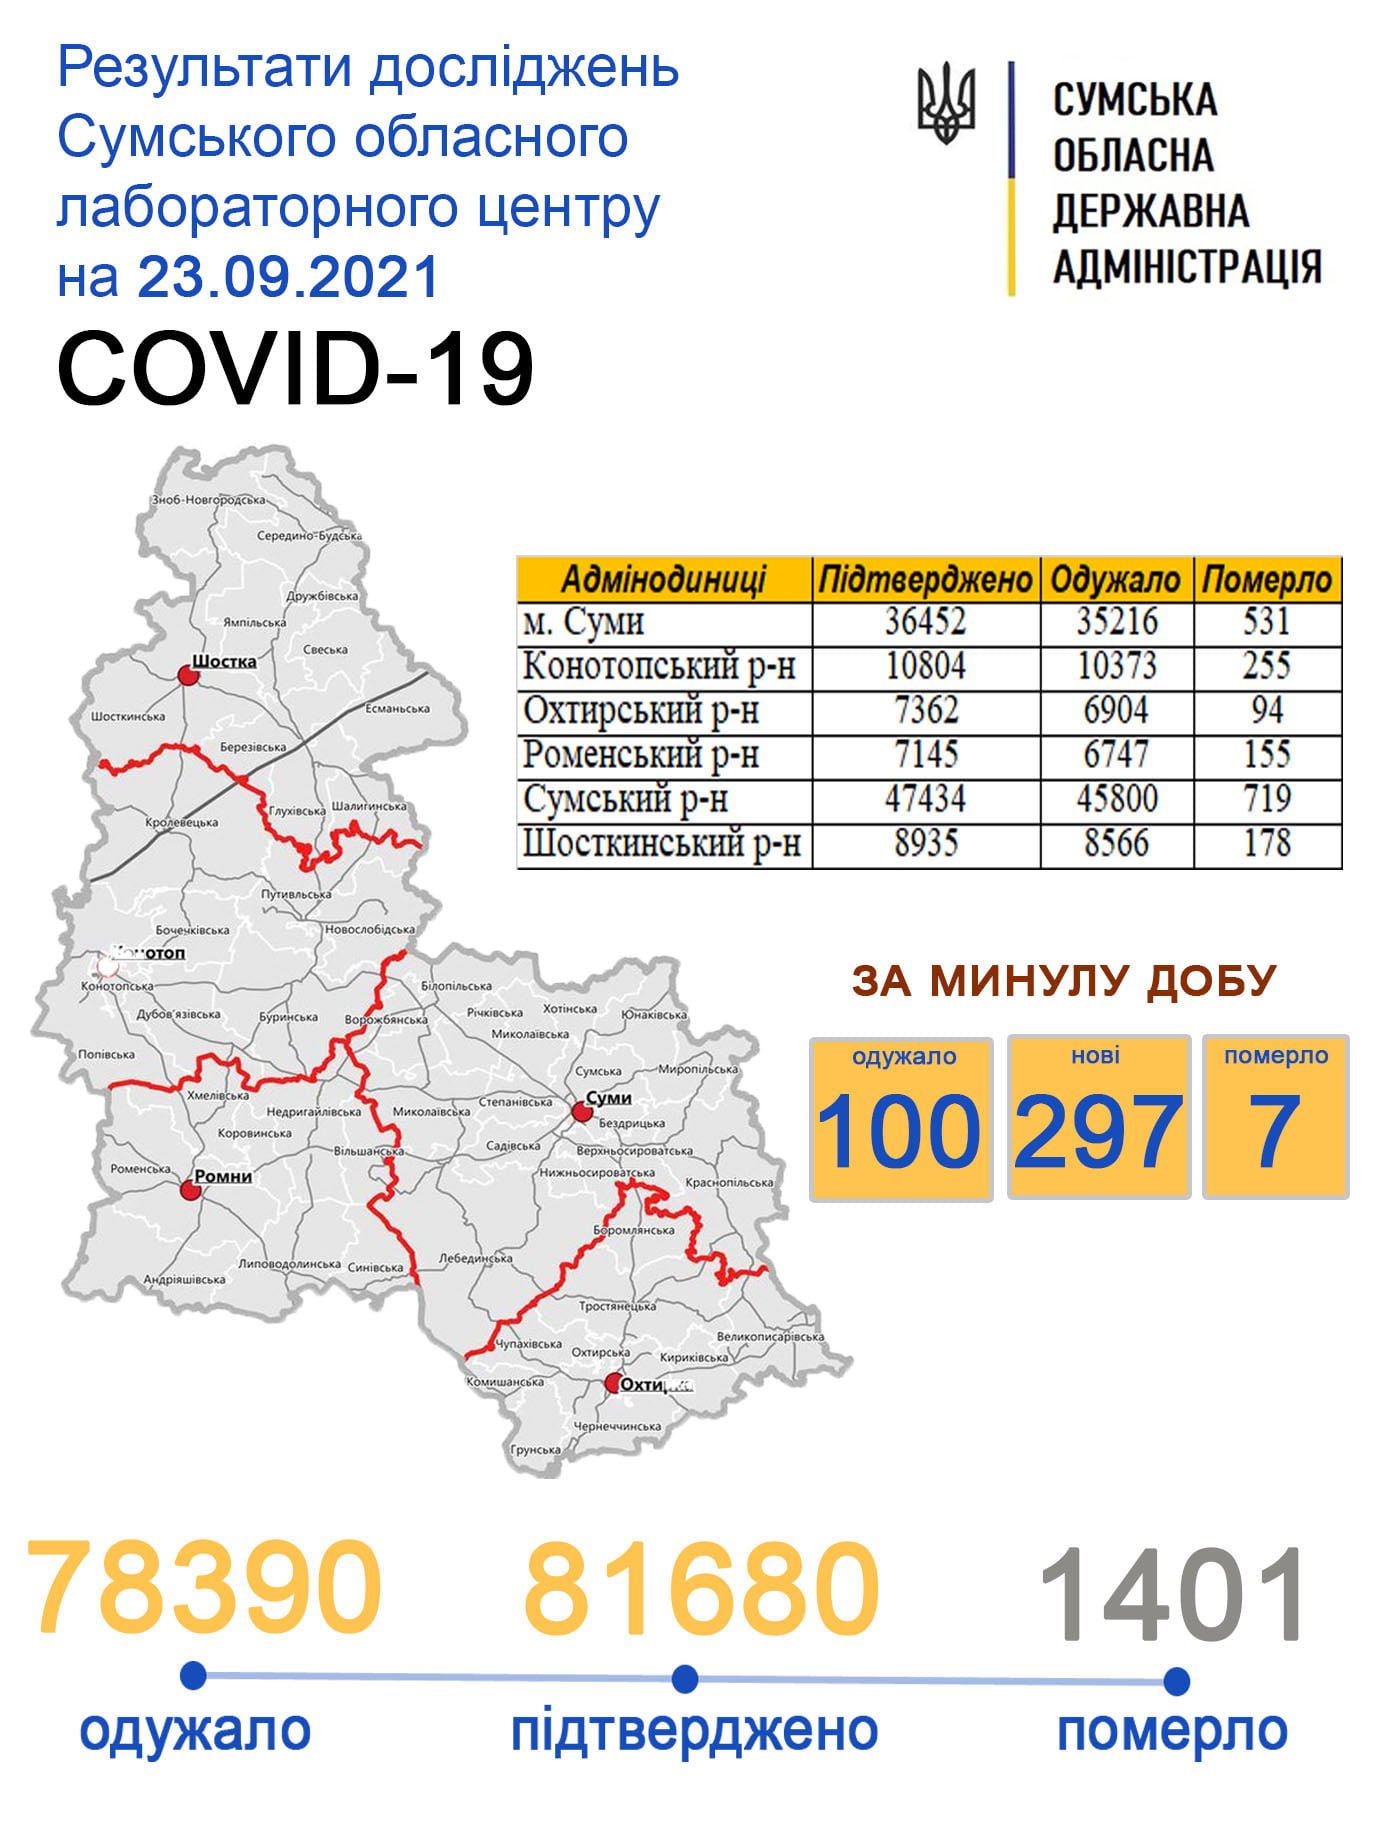    covid-19  297   